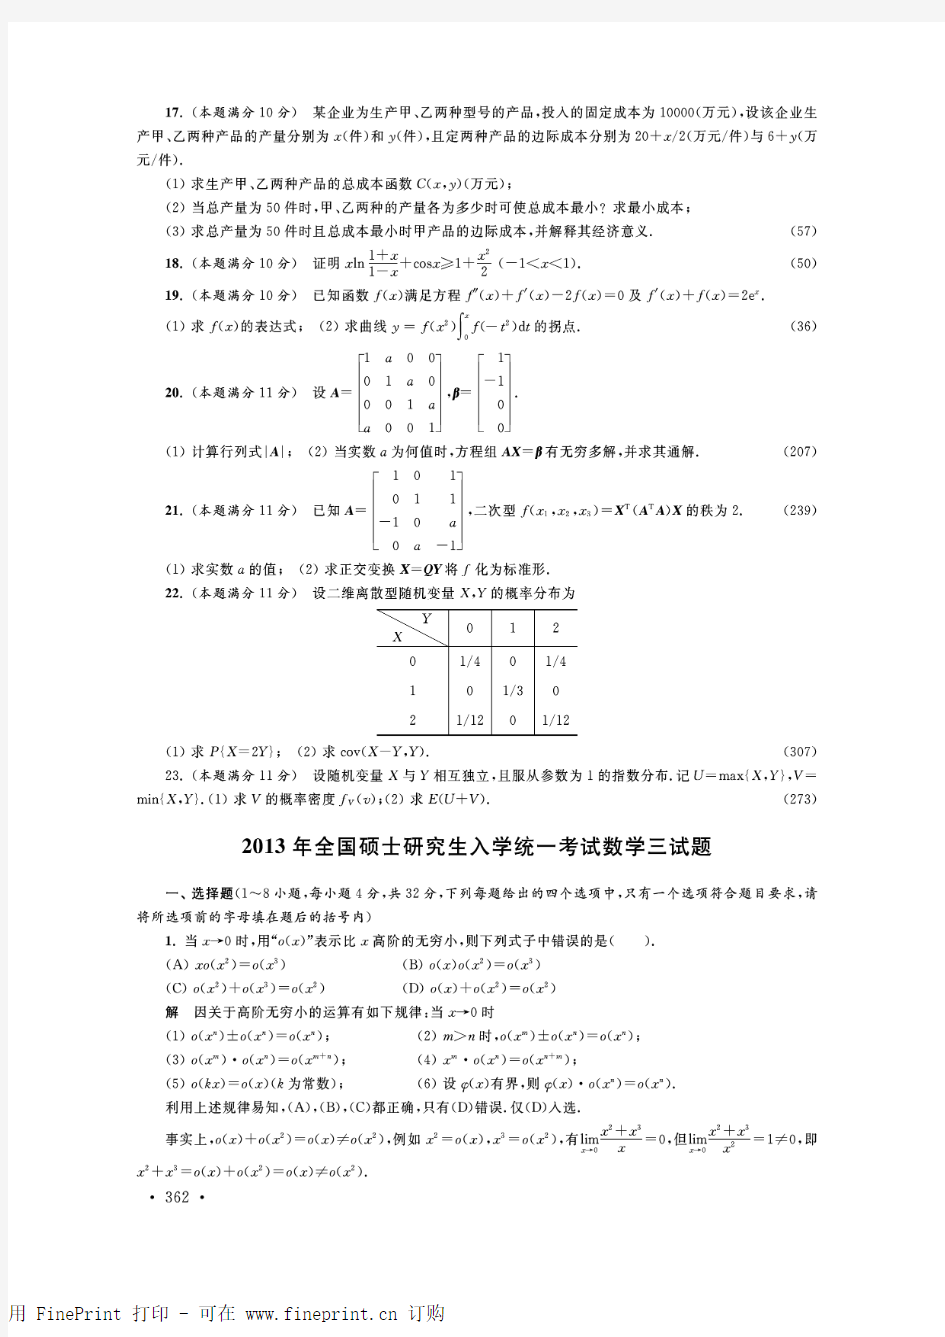 2013年考研数学三真题及解析(毛纲源完整版)